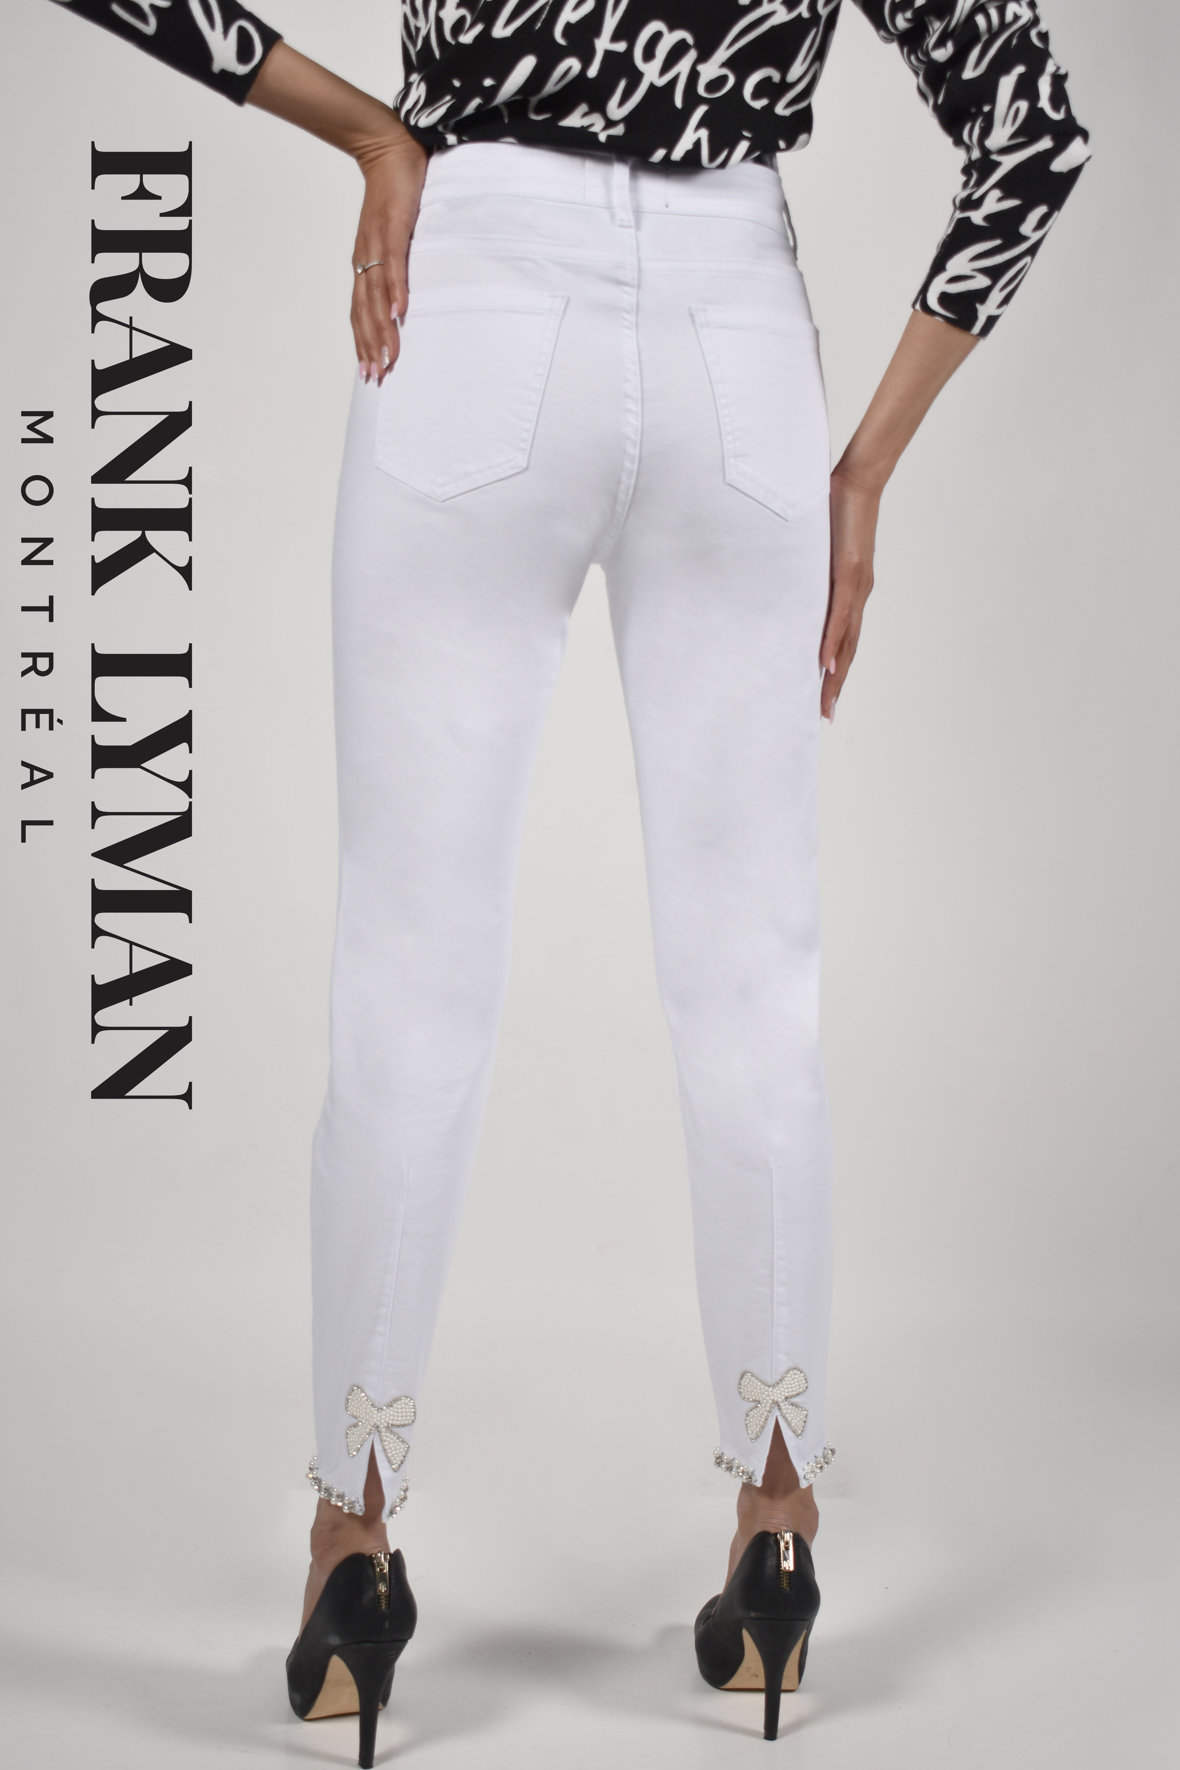 Frank Lyman hvide ankel jeans med perler mv ved 7/8 del - Lohse